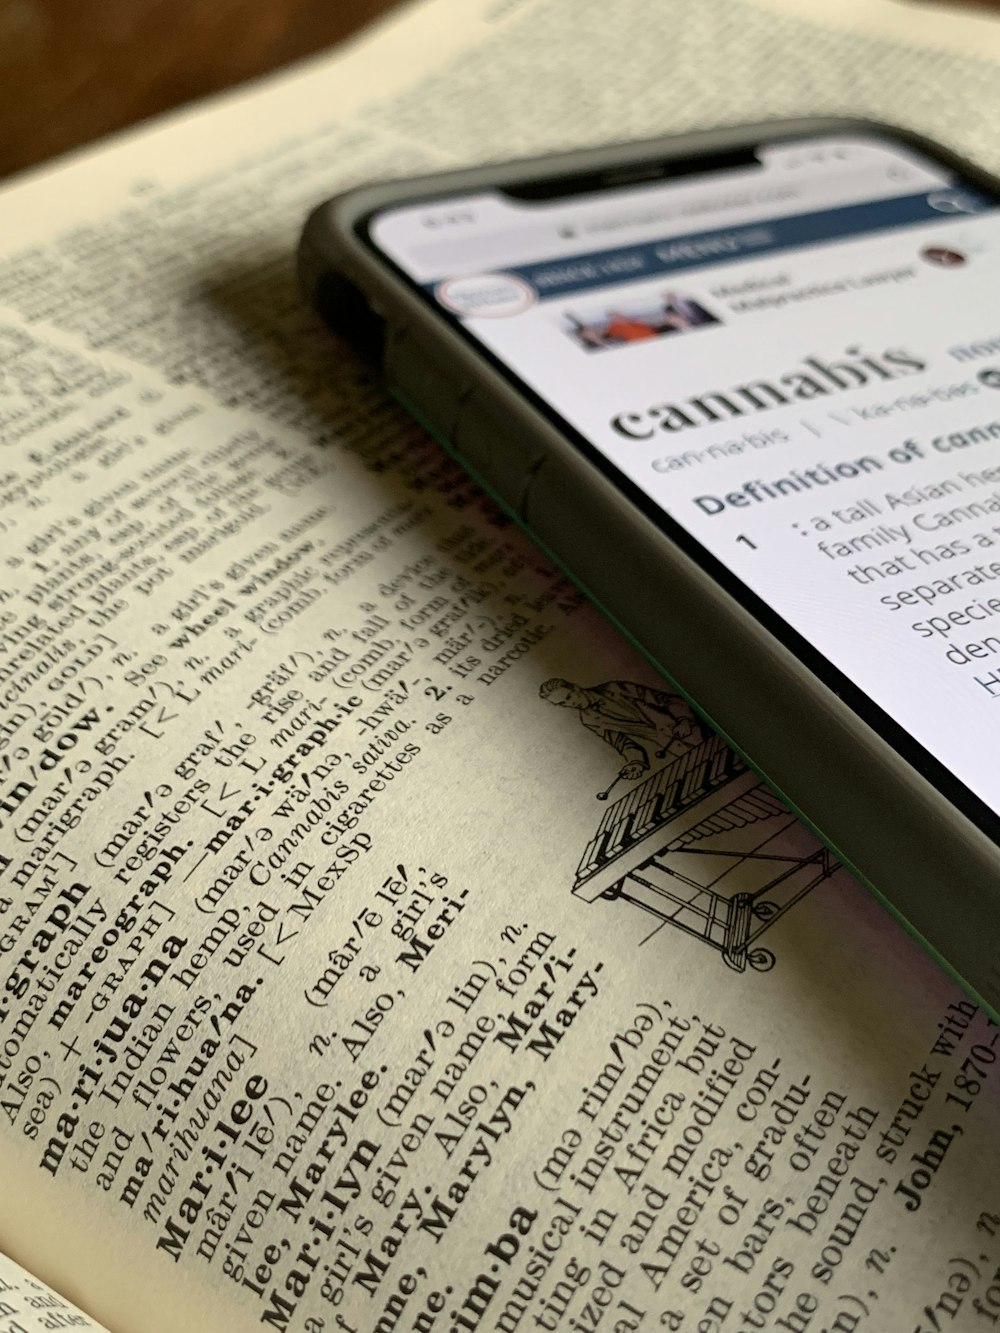 iPhone X argentato che mostra la definizione di cannabis in cima al dizionario